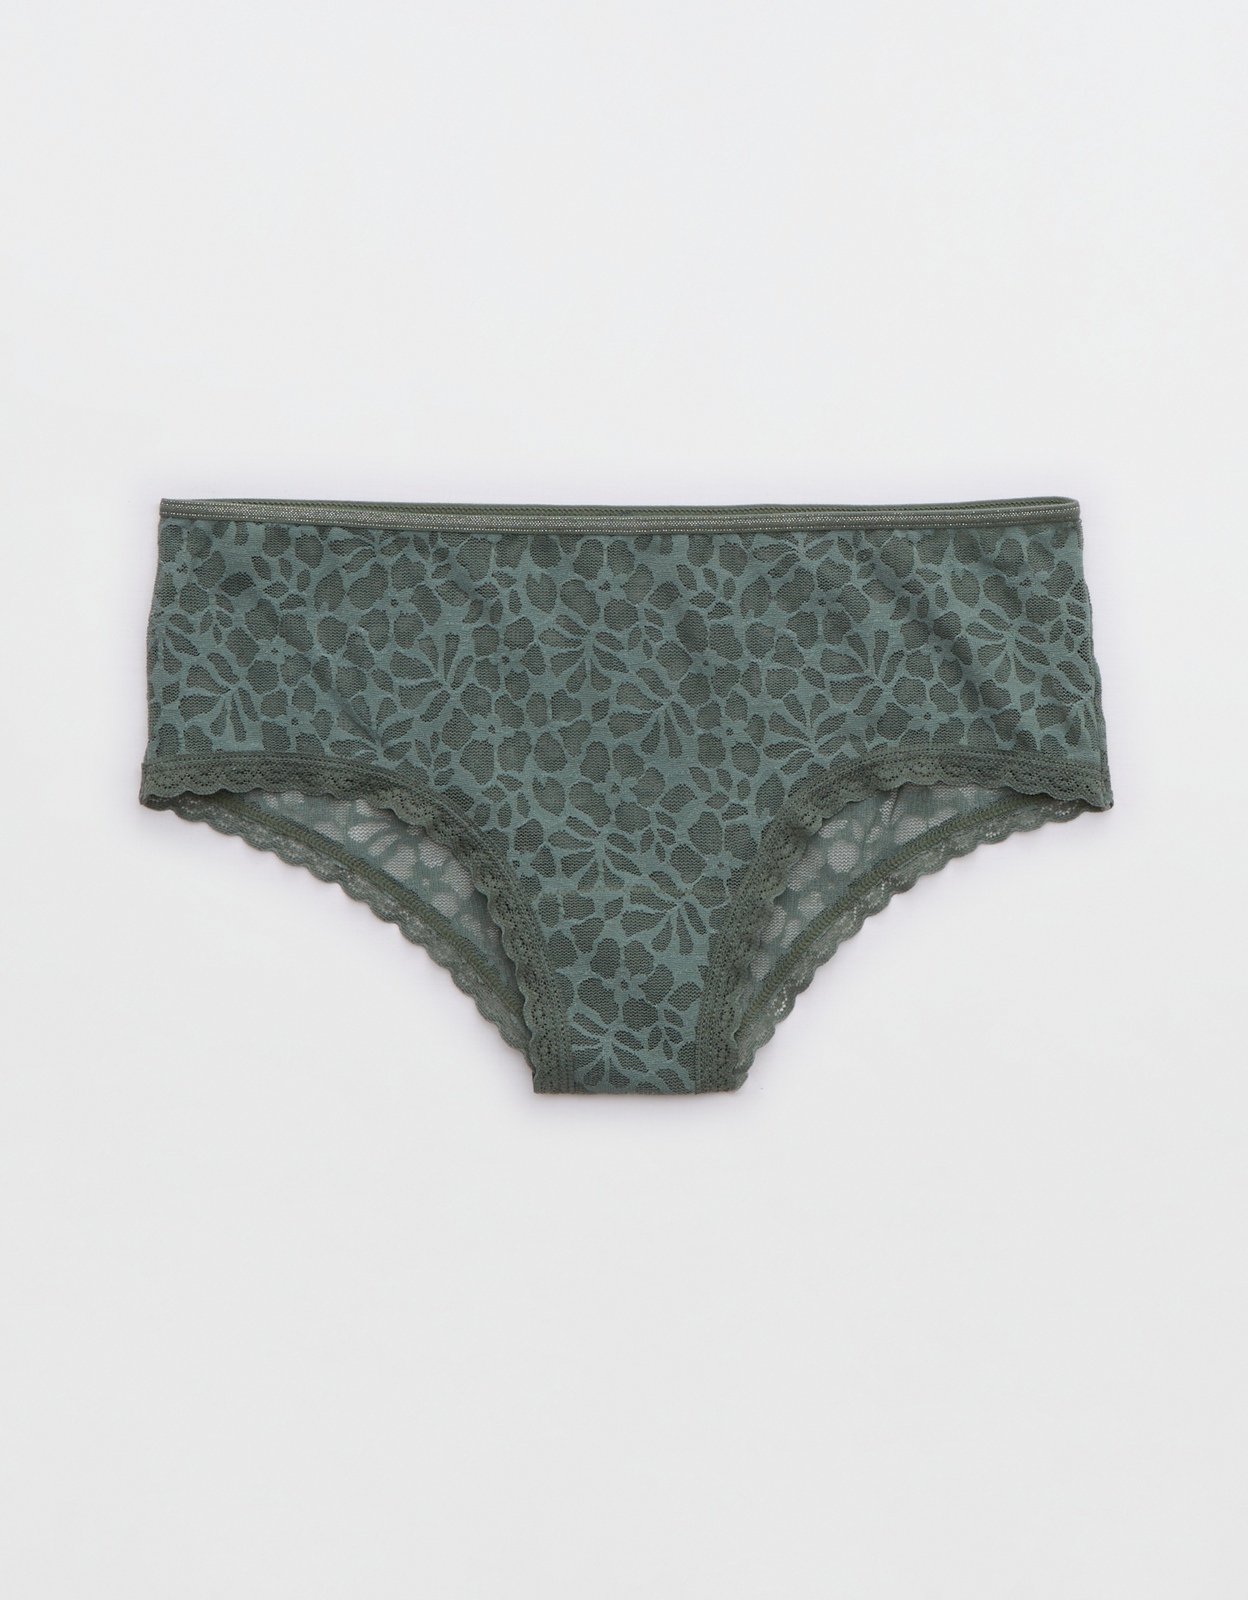 Buy Aerie Island Breeze Lace Lurex Cheeky Underwear online